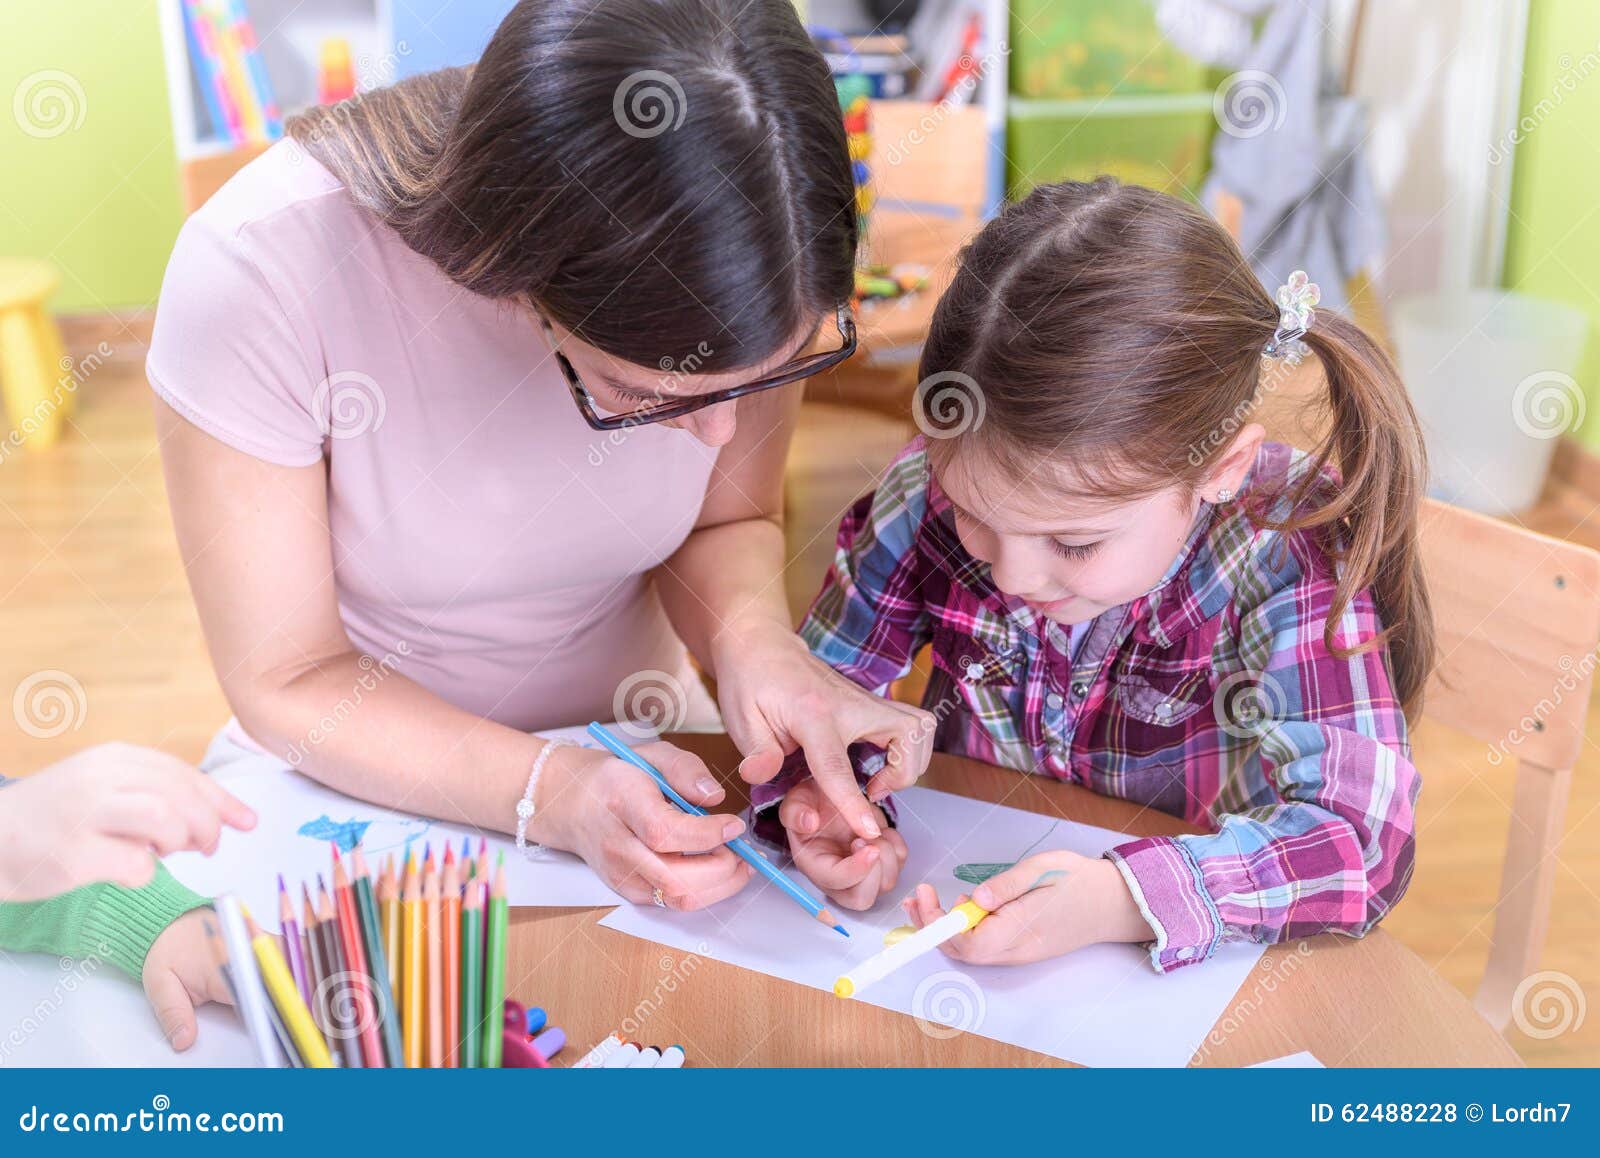 teacher harnessing kids creativity in the kindergarten and preschool